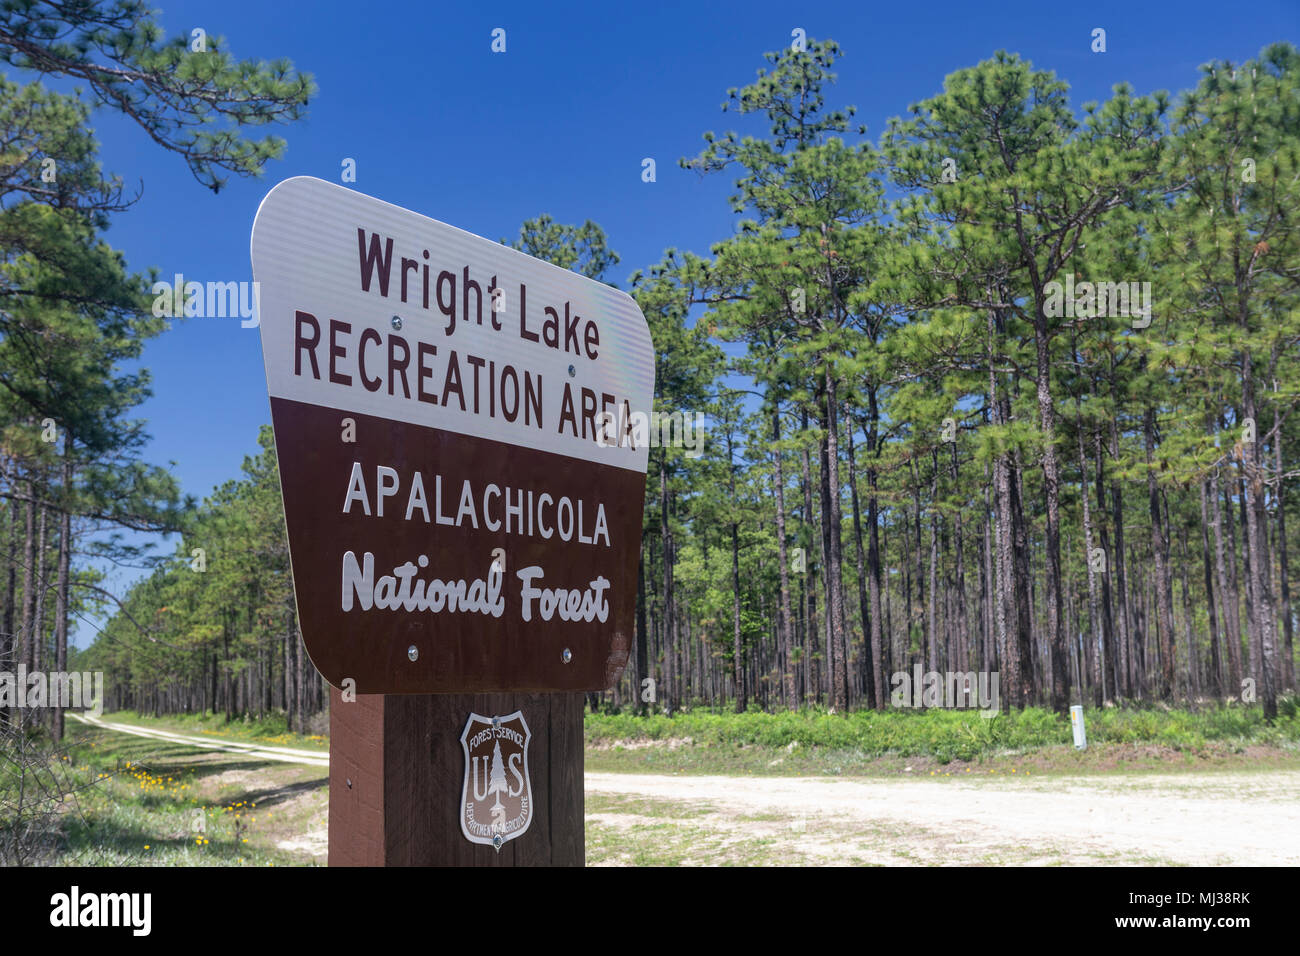 Un segno segna l'entrata al lago Wright Recreation Area in Apalachicola National Forest nel panhandle della Florida. Foto Stock